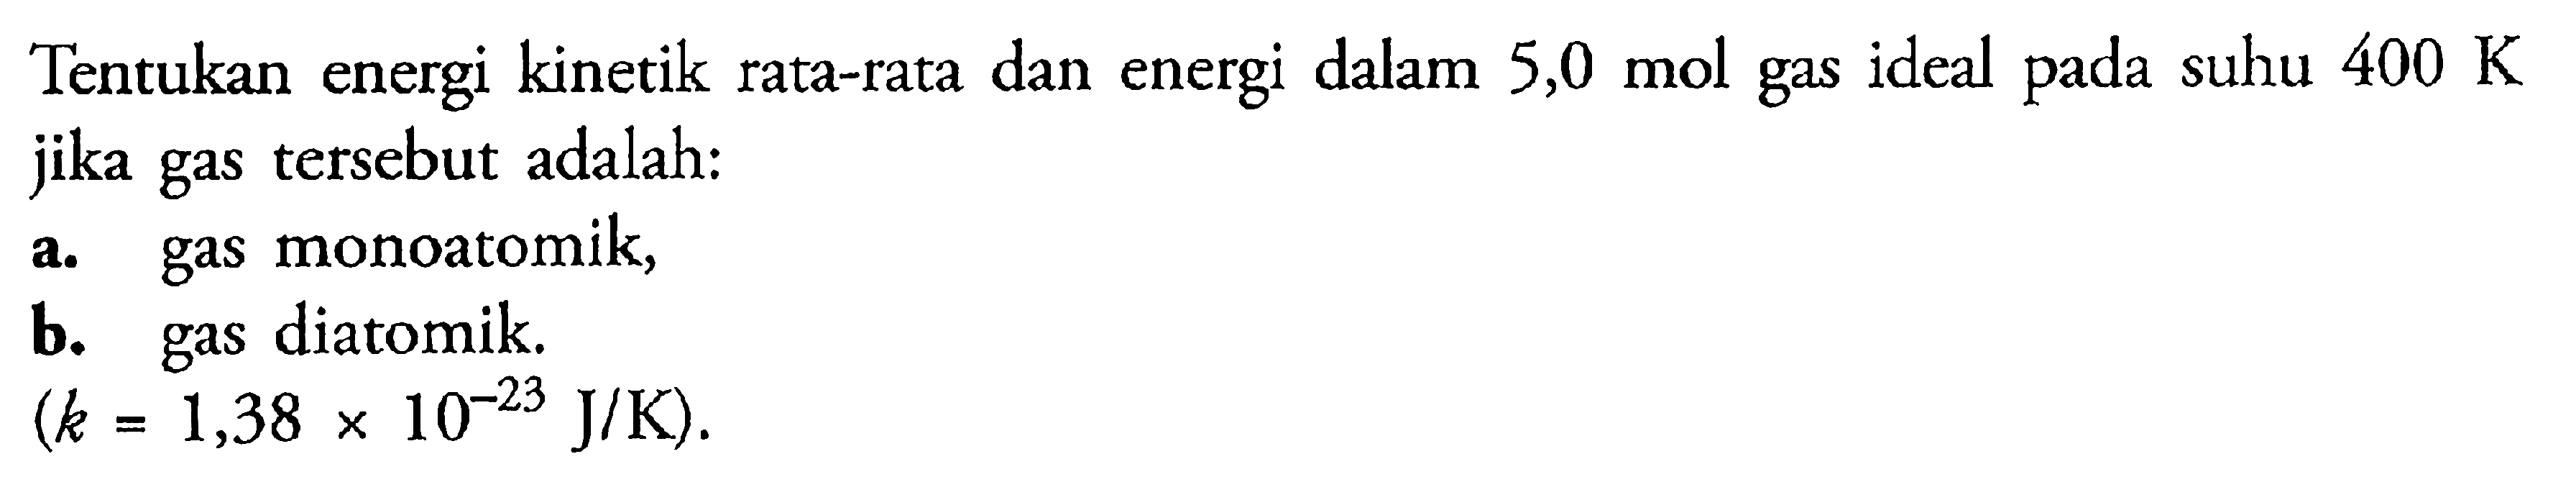 Tentukan energi kinetik rata-rata dan energi dalam 5,0 mol gas ideal pada suhu 400 K jika gas tersebut adalah: a. gas monoatomik, b. diatomik. (k = 1,38 x J/K).